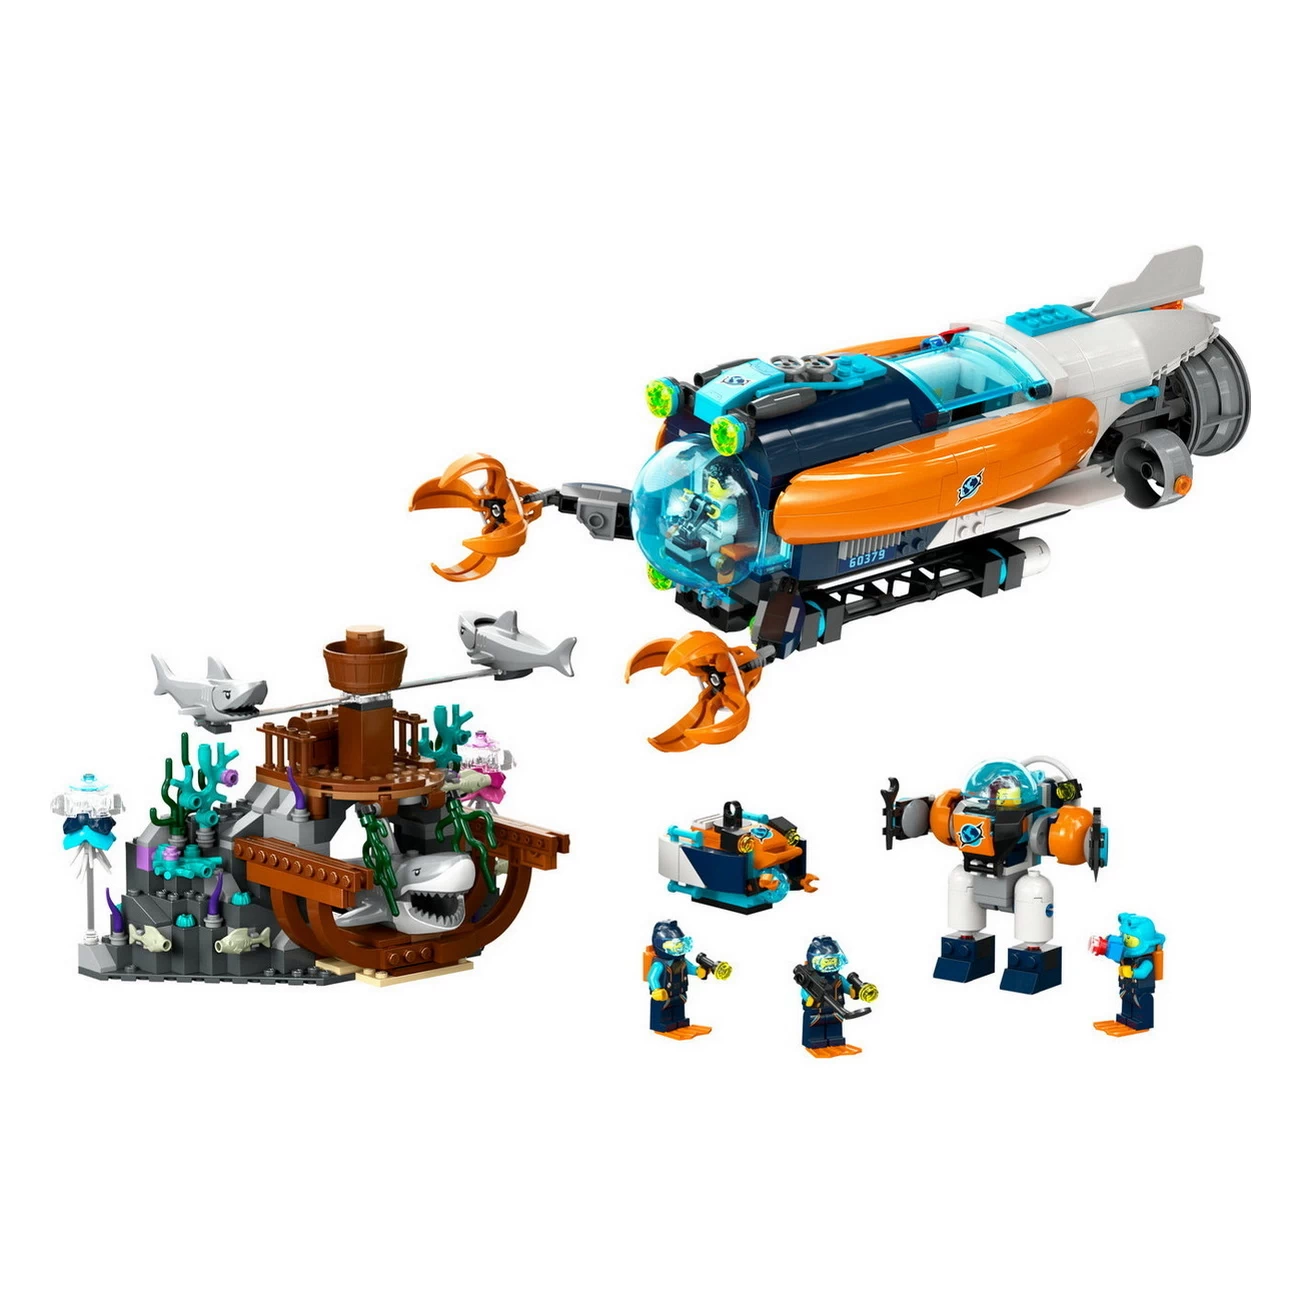 LEGO City 60379 - Forscher-U-Boot